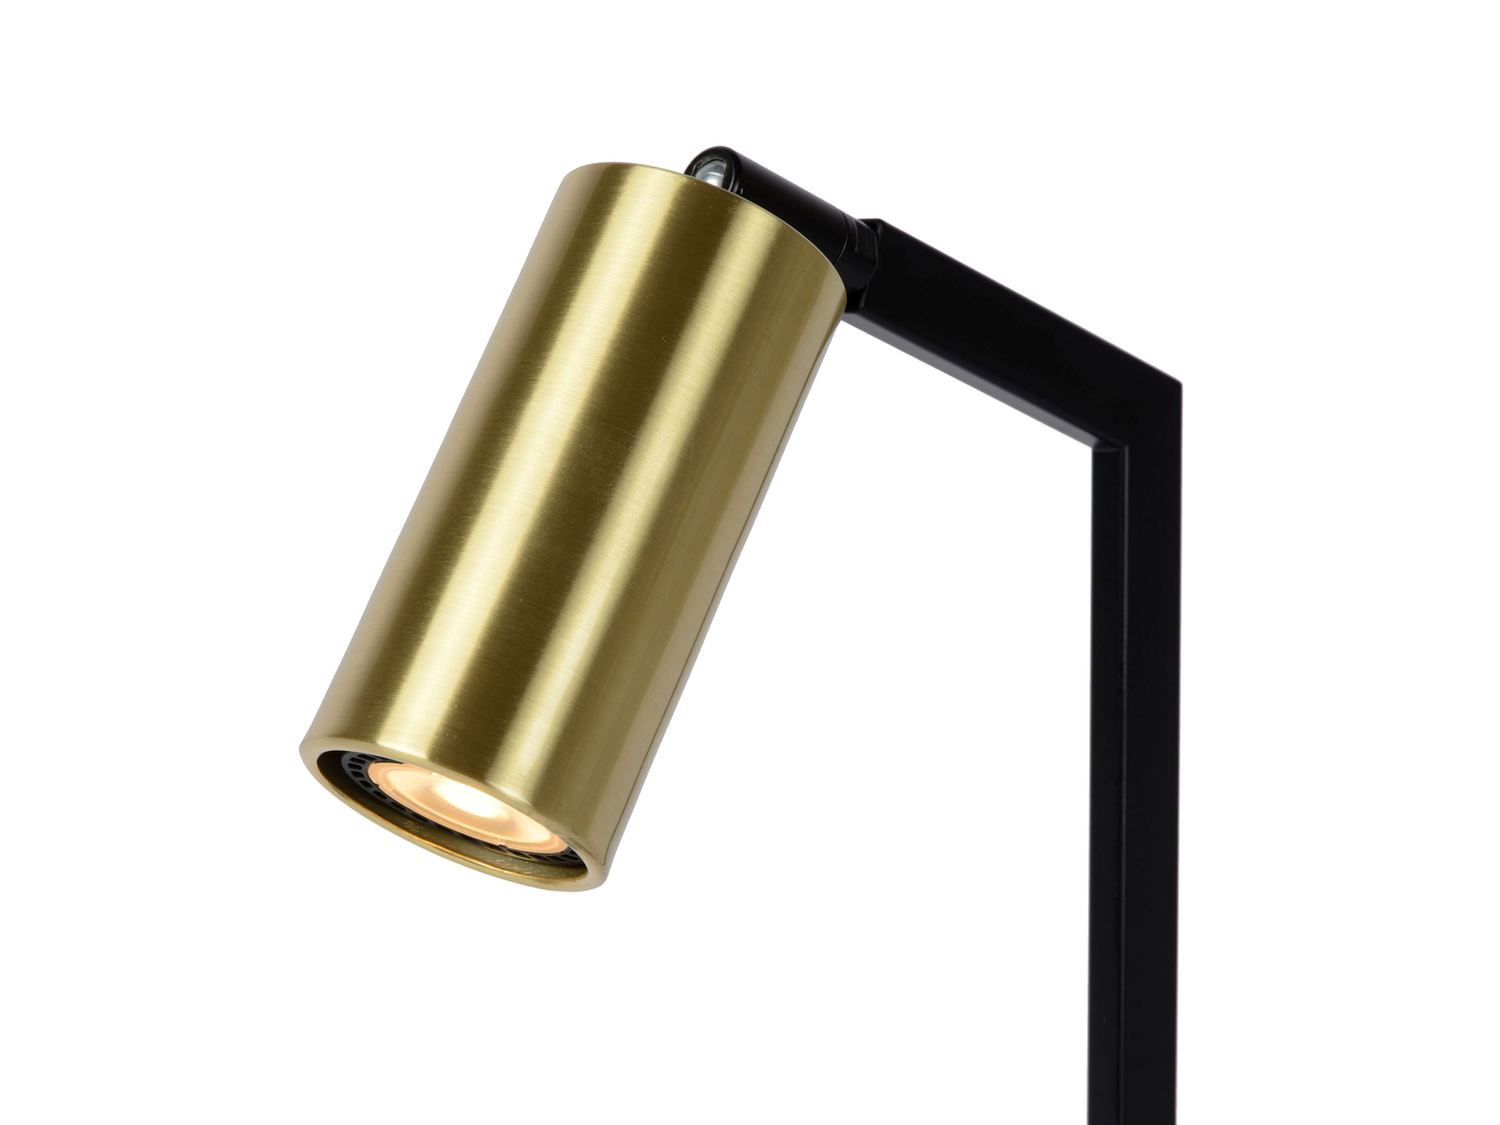 Stolní lampa Sybil, černá, GU10, 43,5-57,5cm